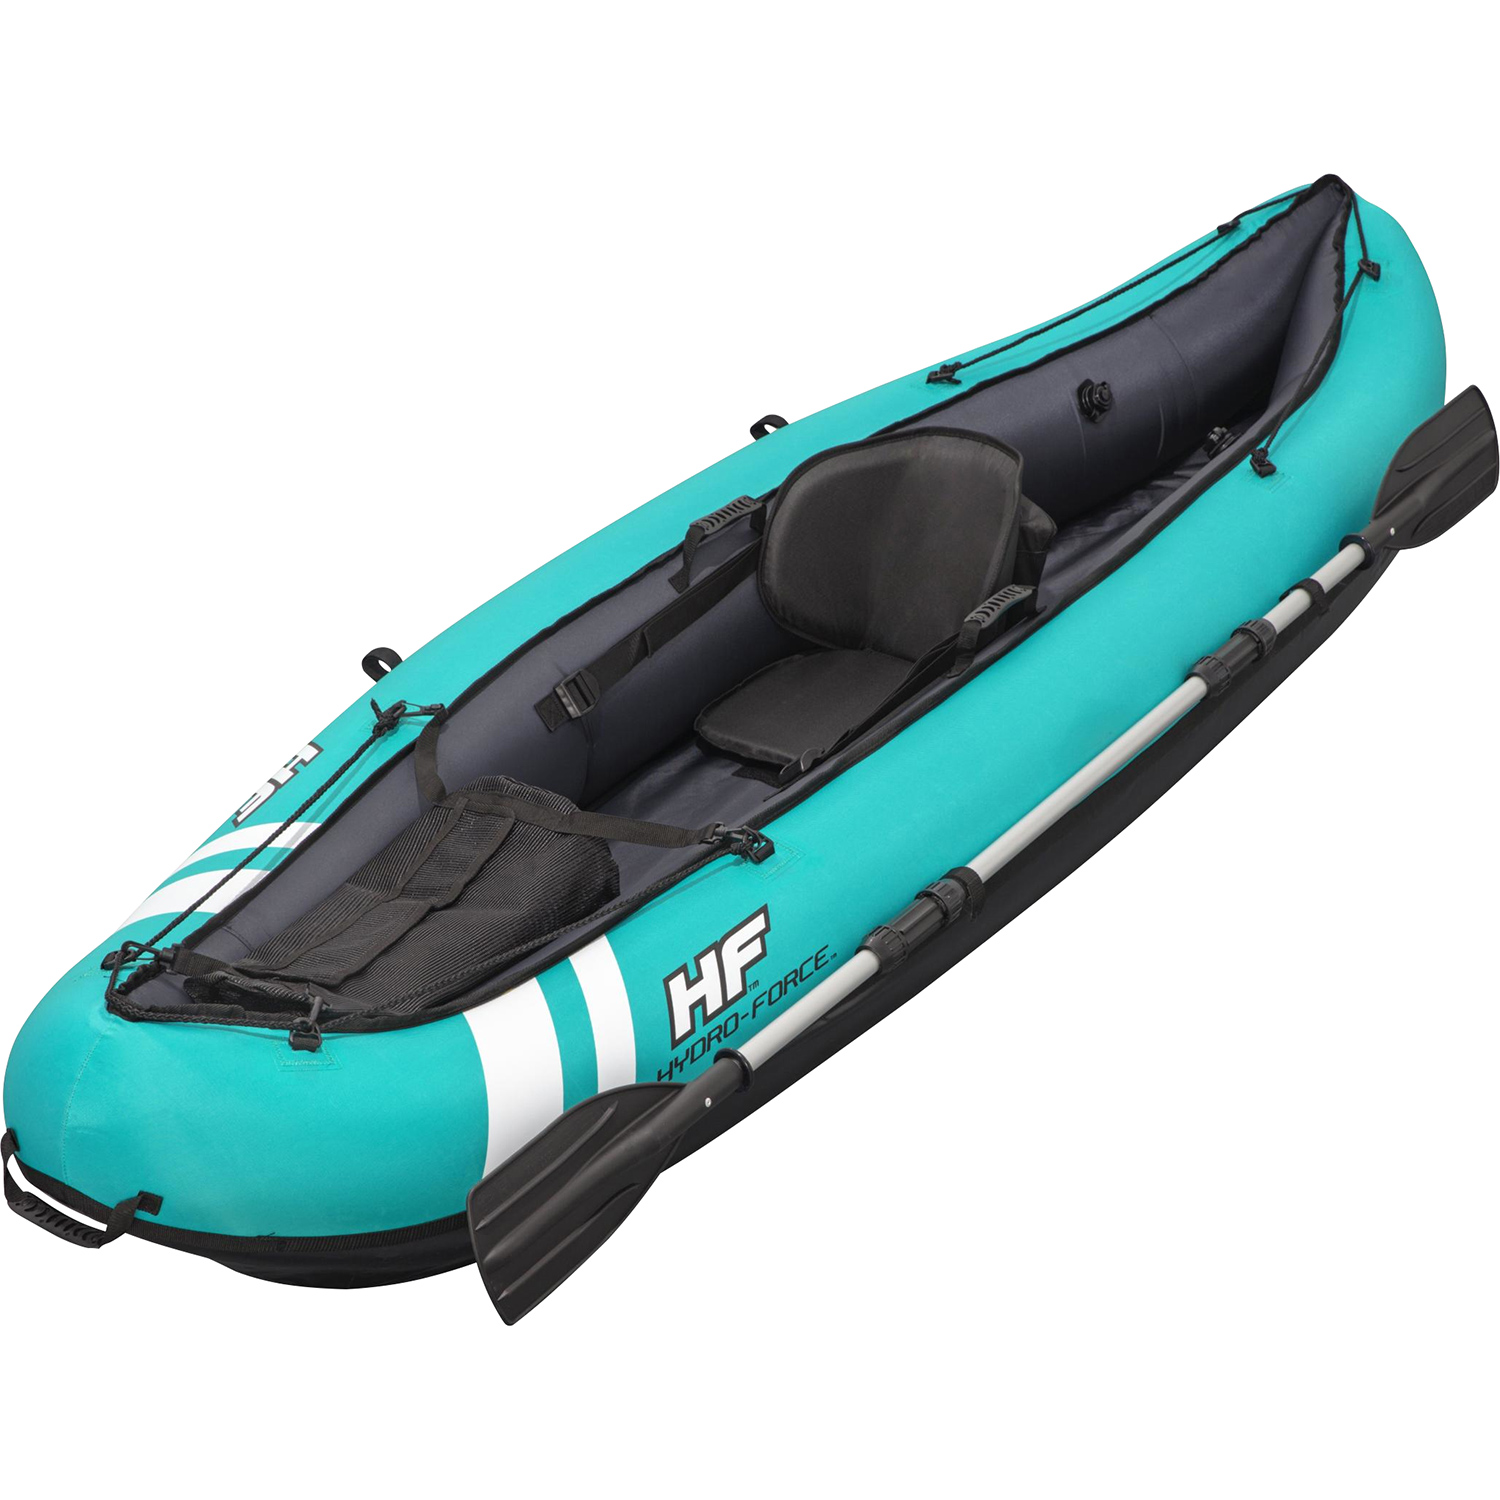 Bestway Hydro force kayak Ventura